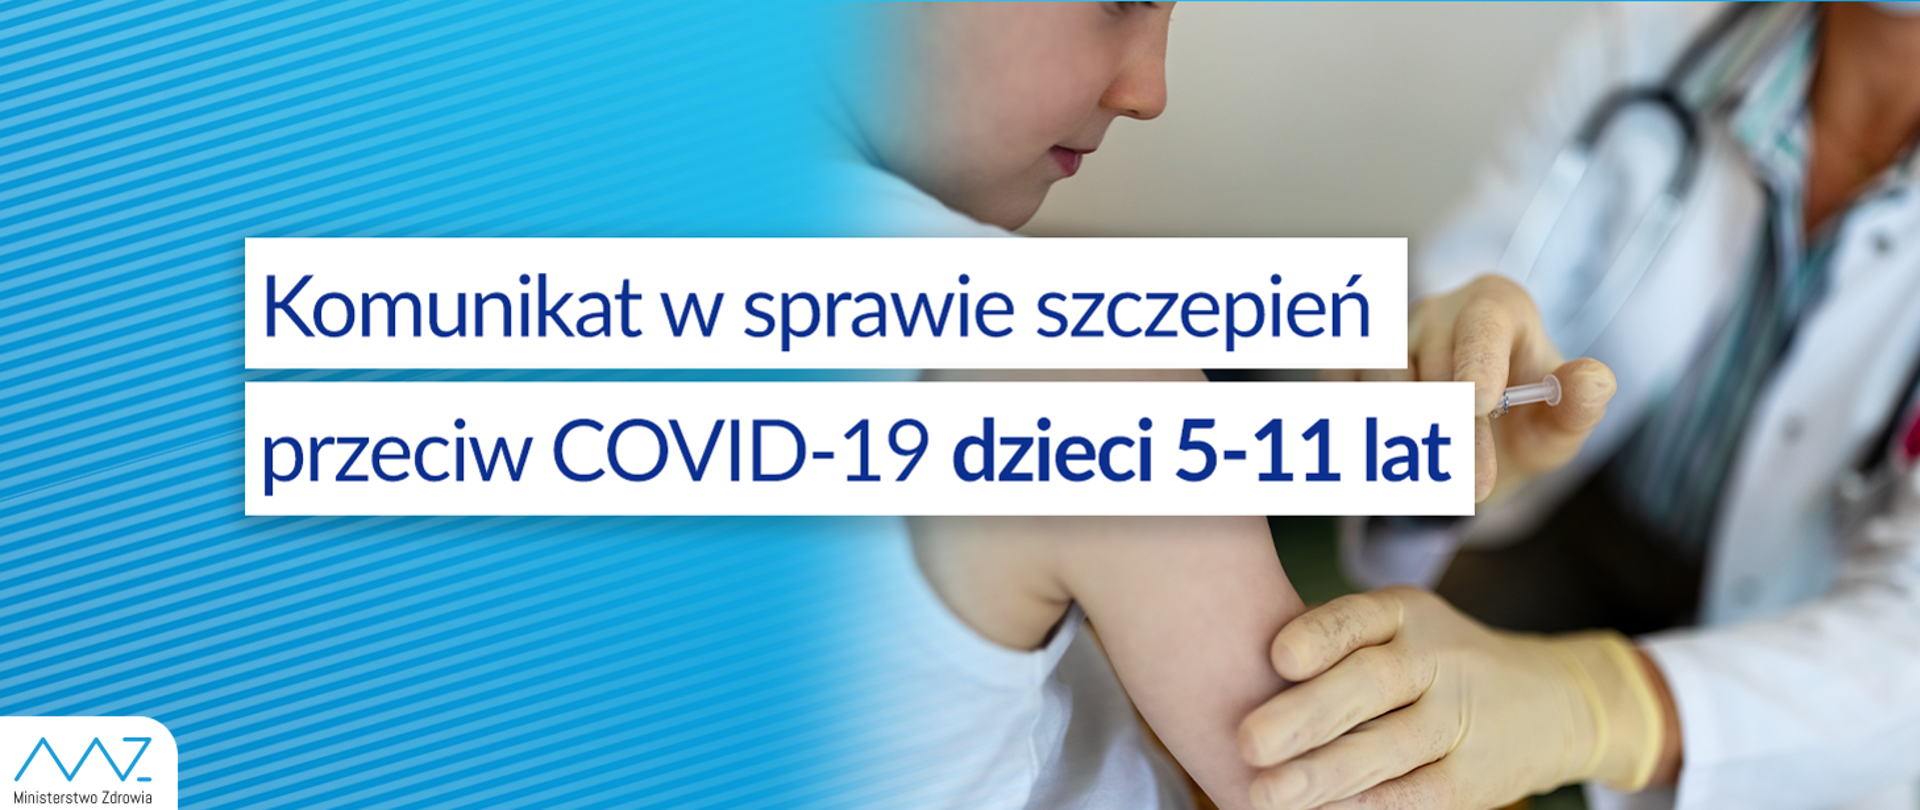 Komunikat nr 15 Ministra Zdrowia w sprawie szczepień przeciw COVID-19 dzieci 5-11 lat